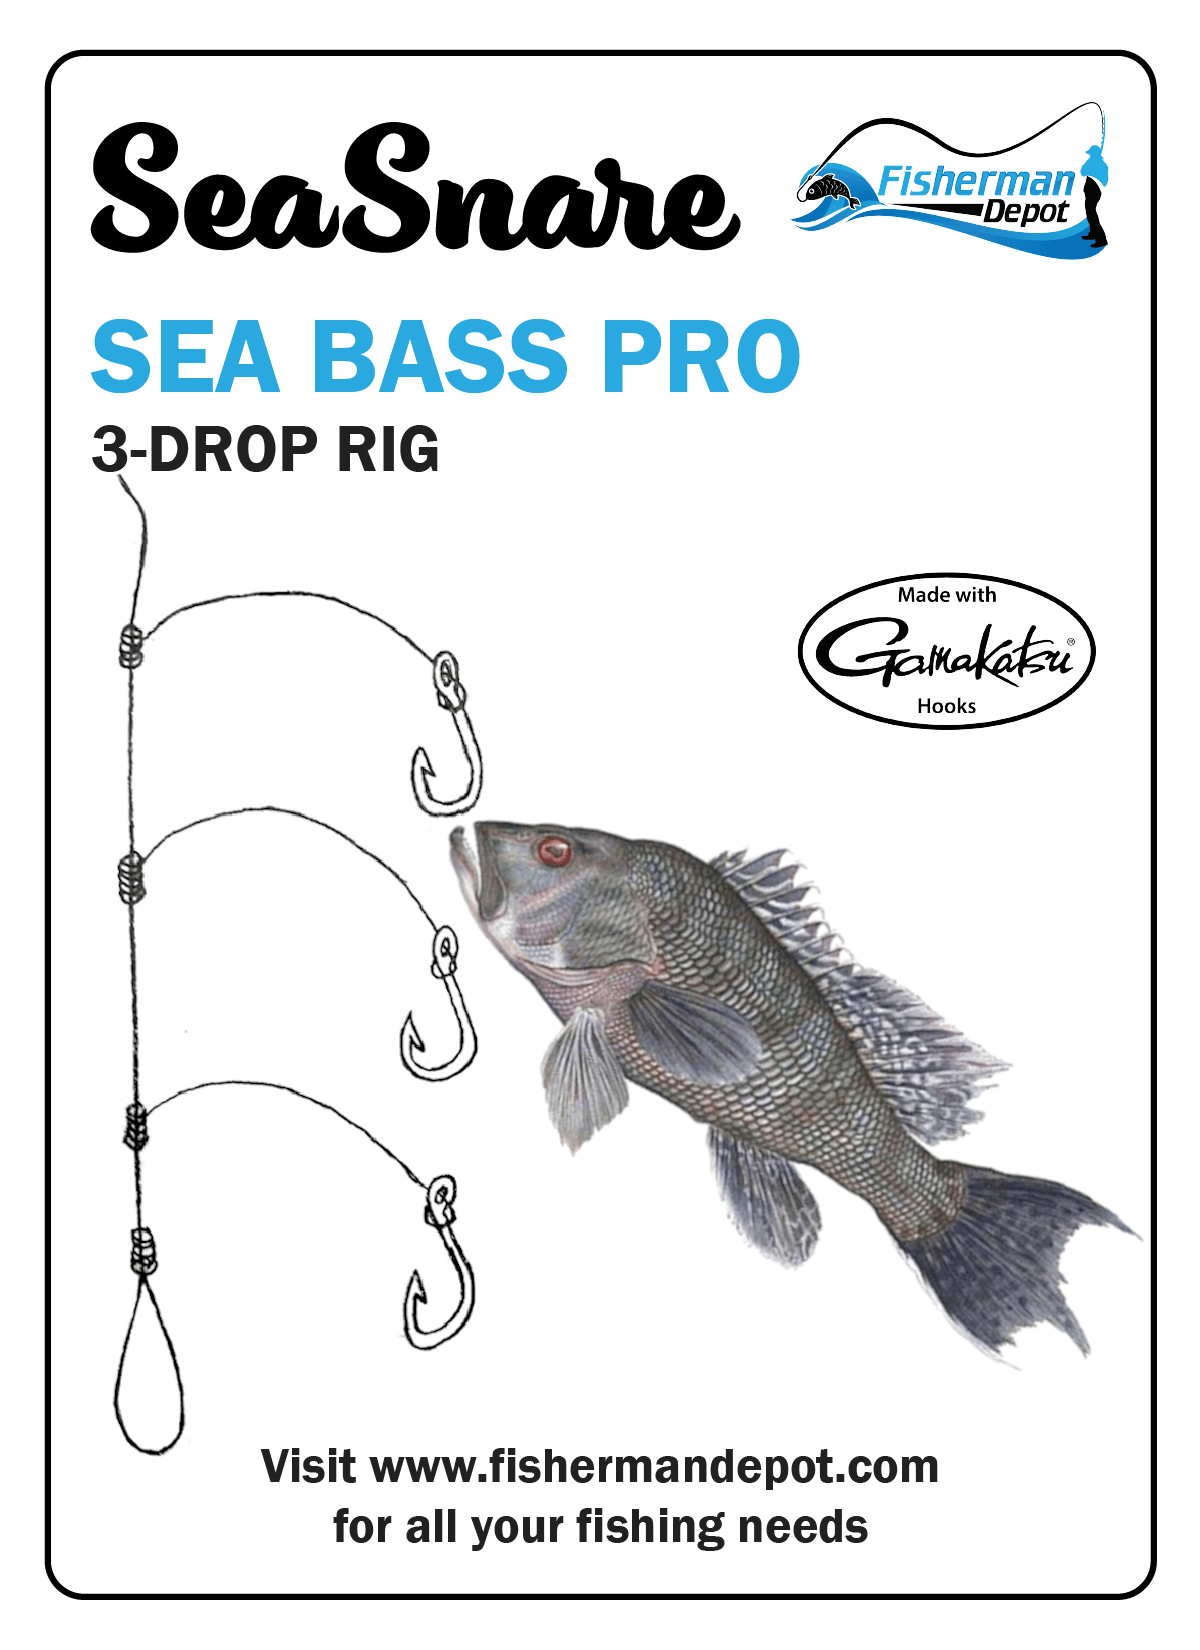 SeaSnare Tog Pro - Professional Blackfish / Tog V Rig - - Owner Hooks